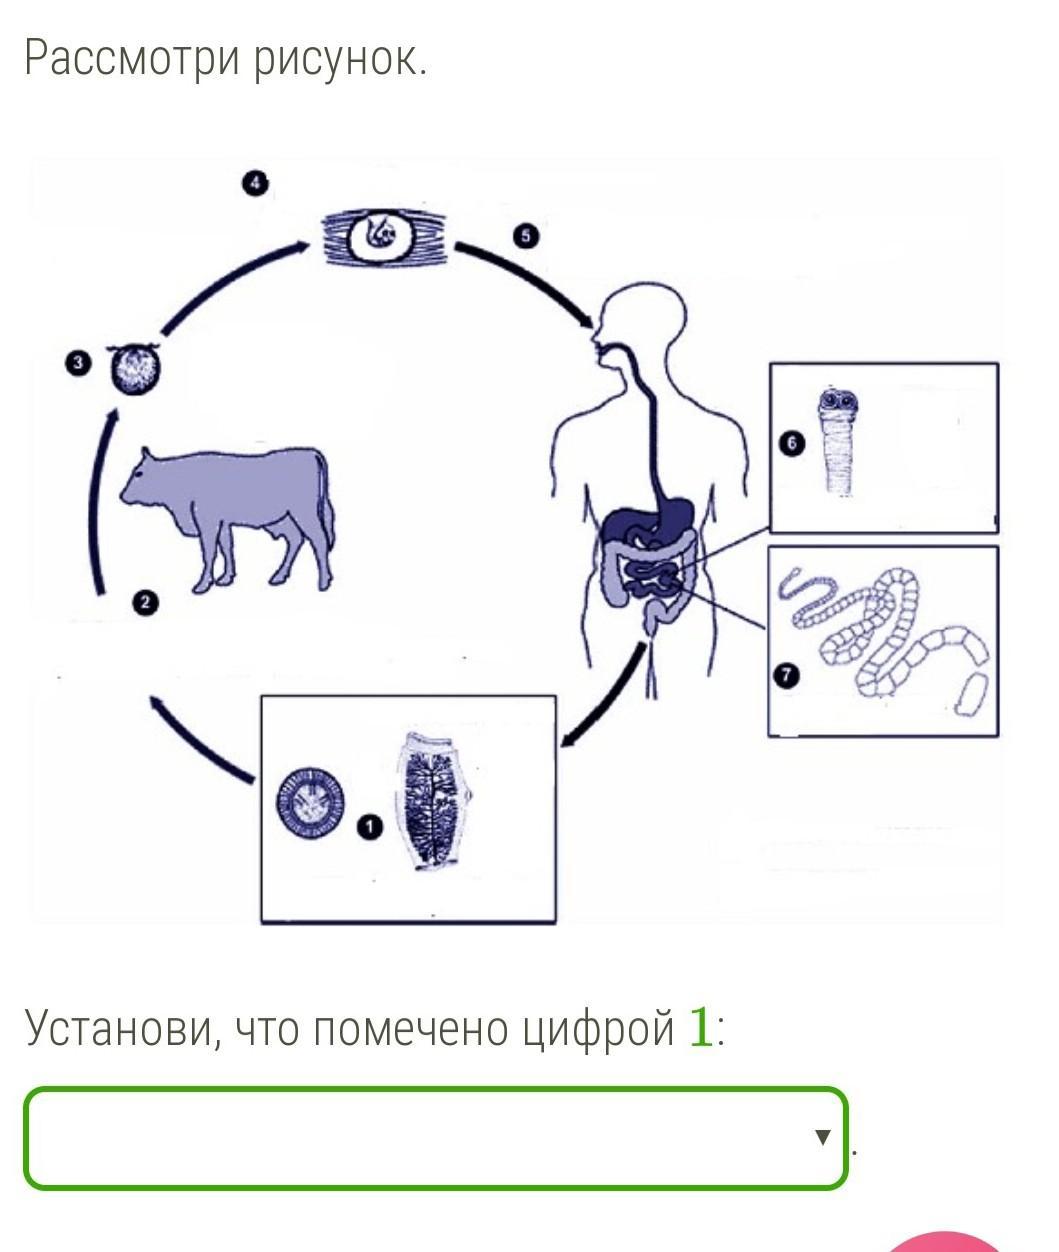 Жизненный цикл бычьего цепня начиная с яиц. Схема развития бычьего цепня. Жизненный цикл бычьего цепня. Цикл развития бычьего цепня рисунок. Жизненный цикл бычьего цепня рисунок.